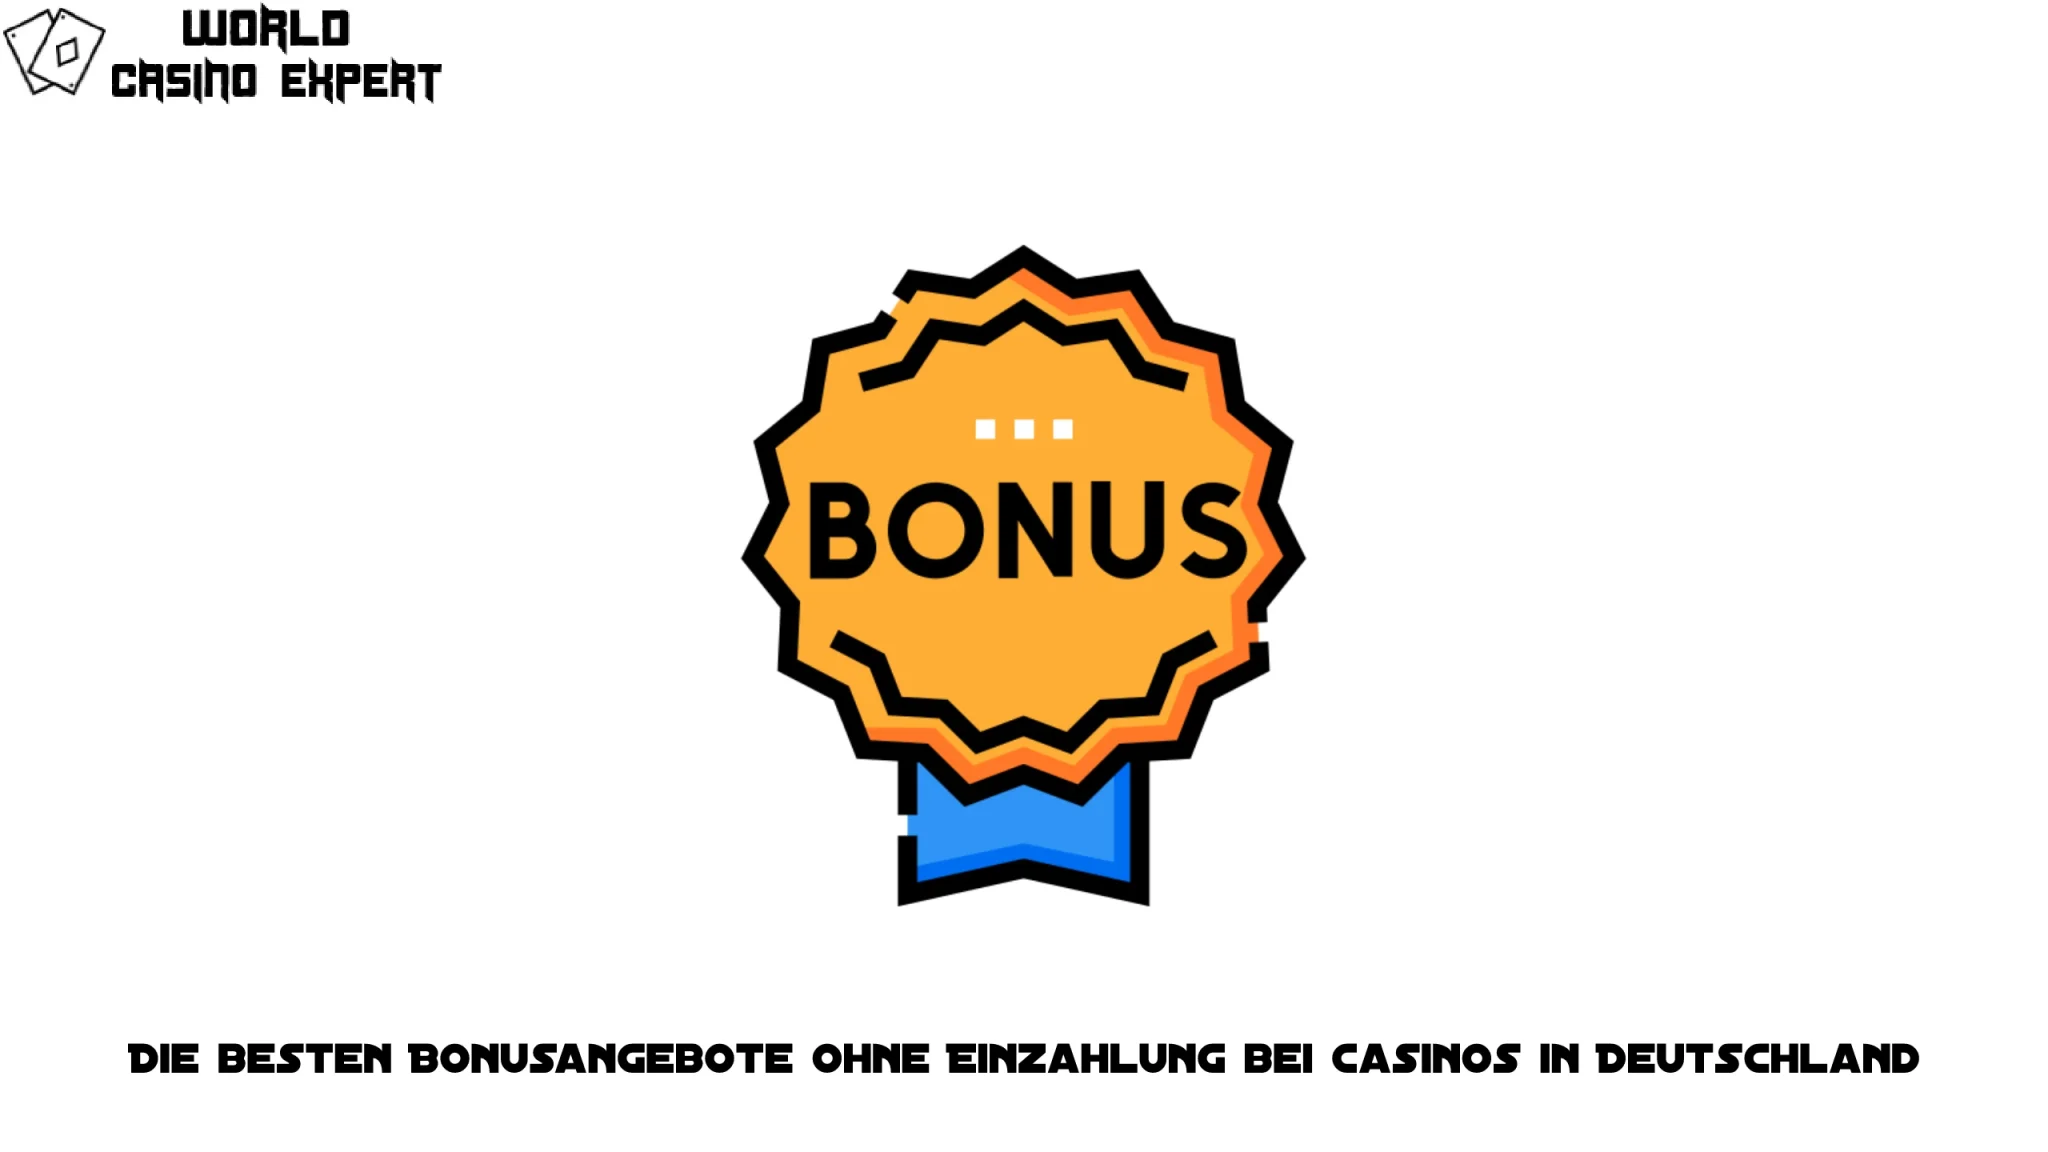 Die besten Bonusangebote ohne Einzahlung bei Casinos in Deutschland